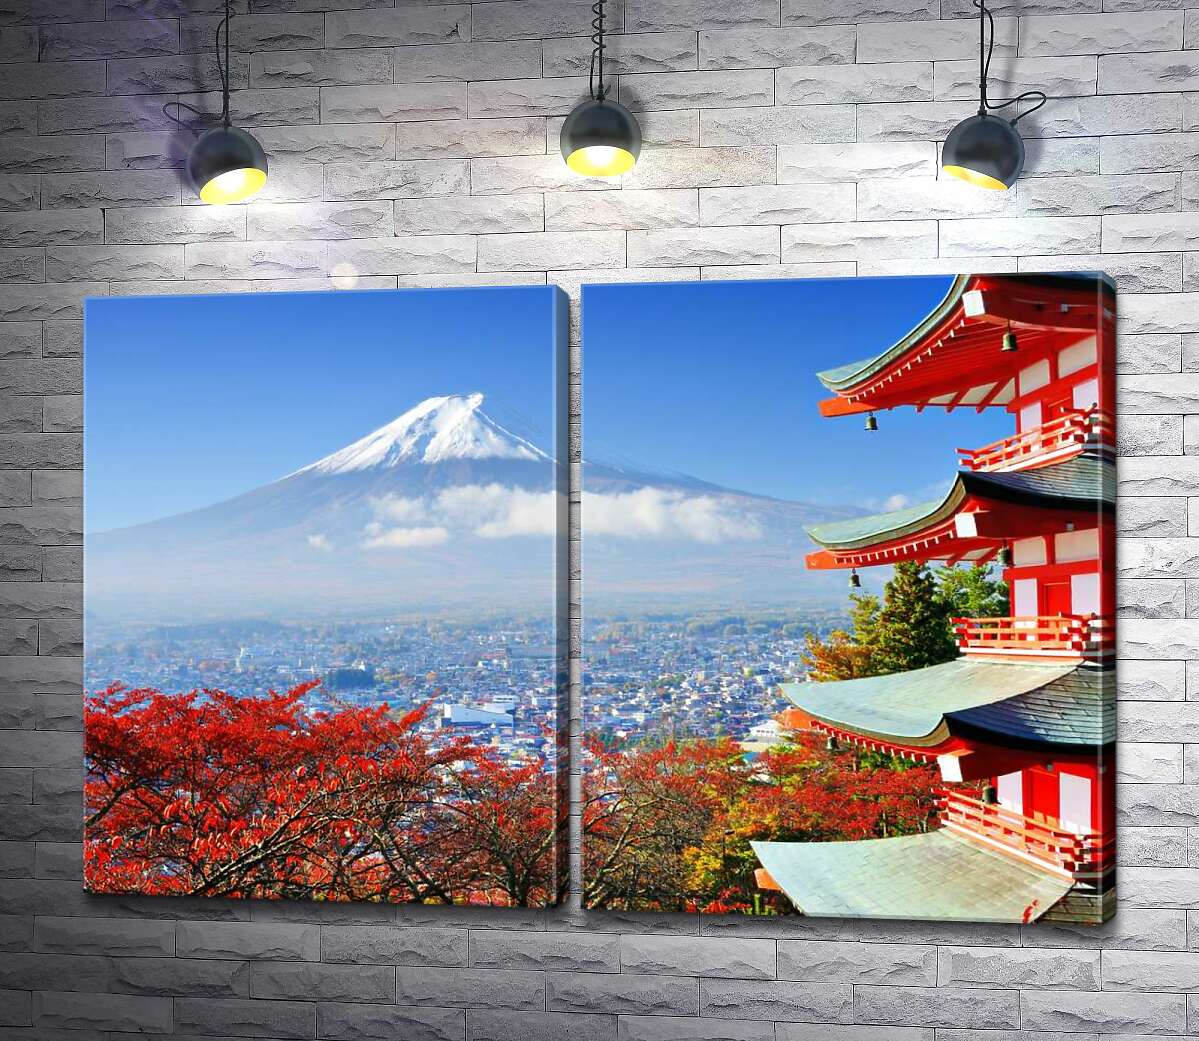 модульная картина Осенний вид на гору Фудзи (Mount Fuji) рядом с живописным зданием пагоды